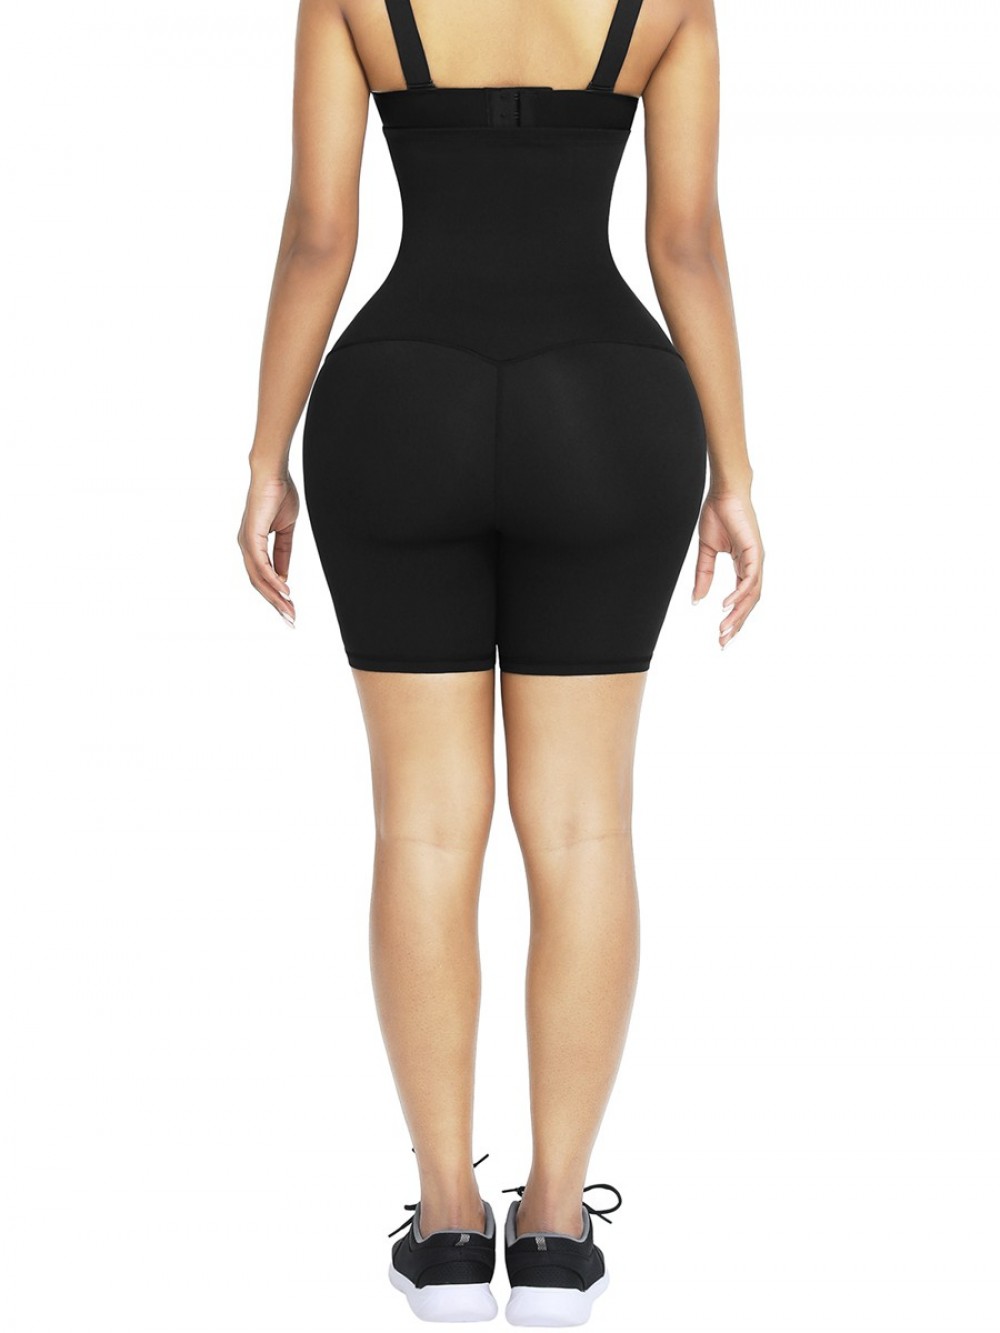 Black 2-In-1 Waist Trainer Shorts Mid-Thigh High Waist Wholesale Online